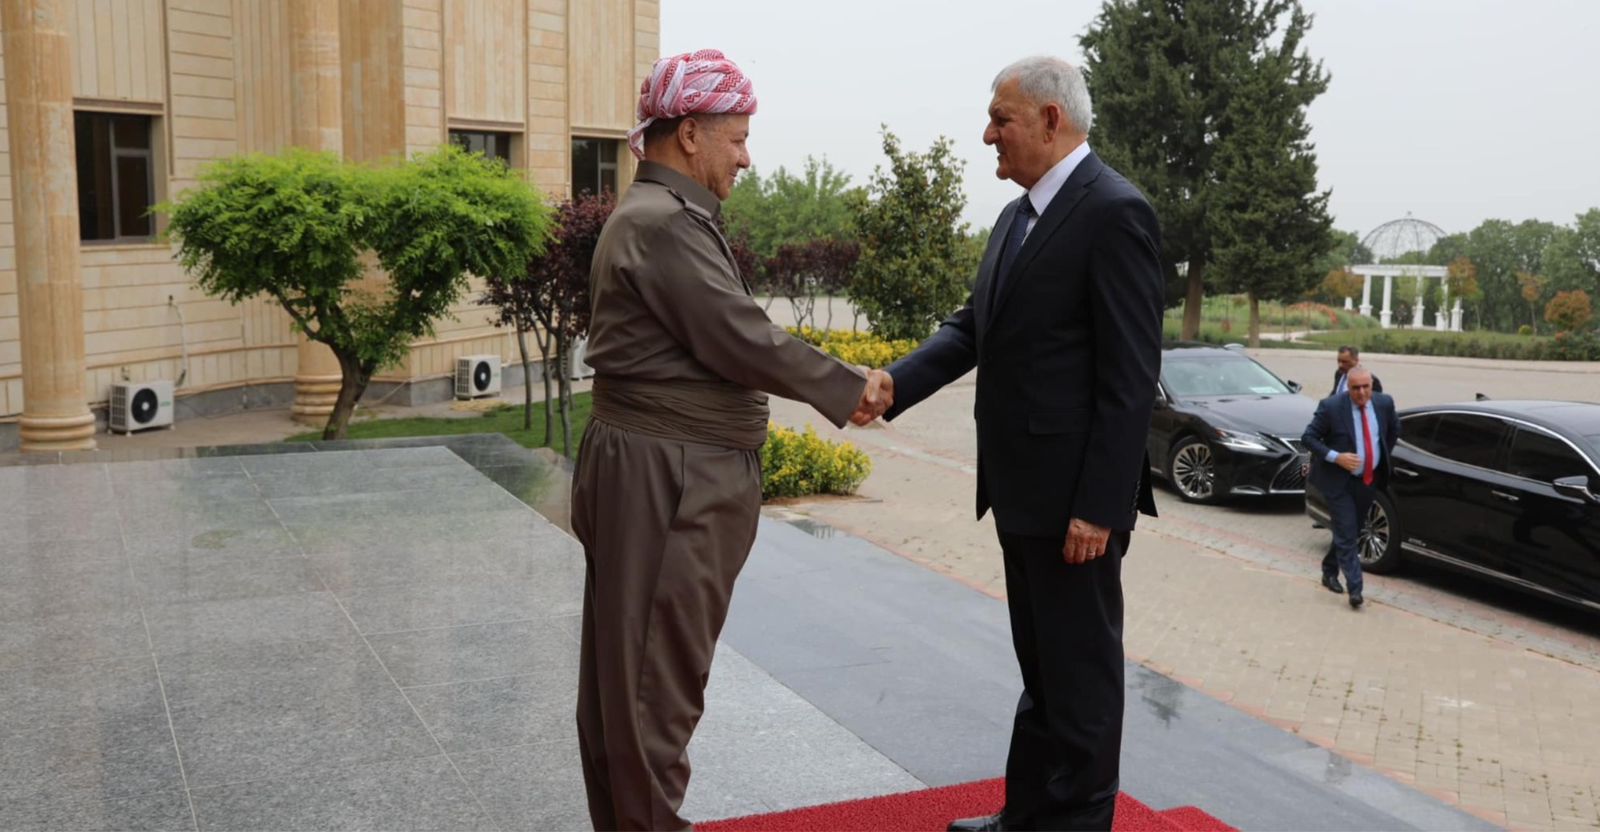 Iraqi president Kurdish leader discuss Iraqi regional affairs in Erbil Meeting